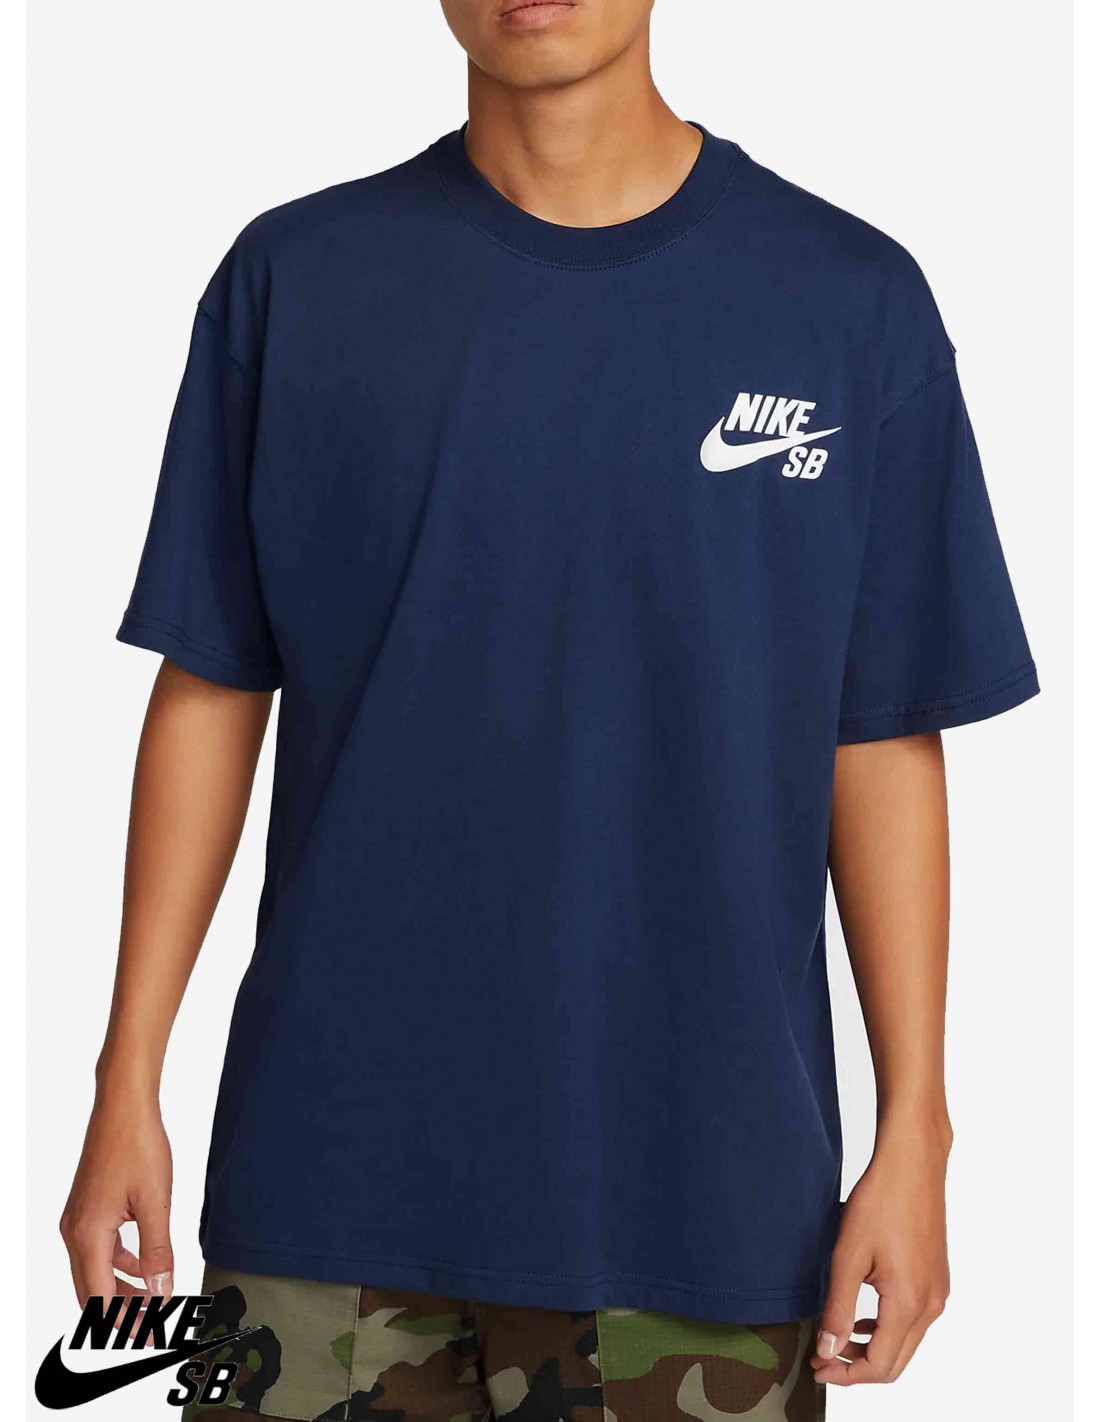 cemento Emigrar plan de estudios Camiseta Nike SB Icon Logo Azul